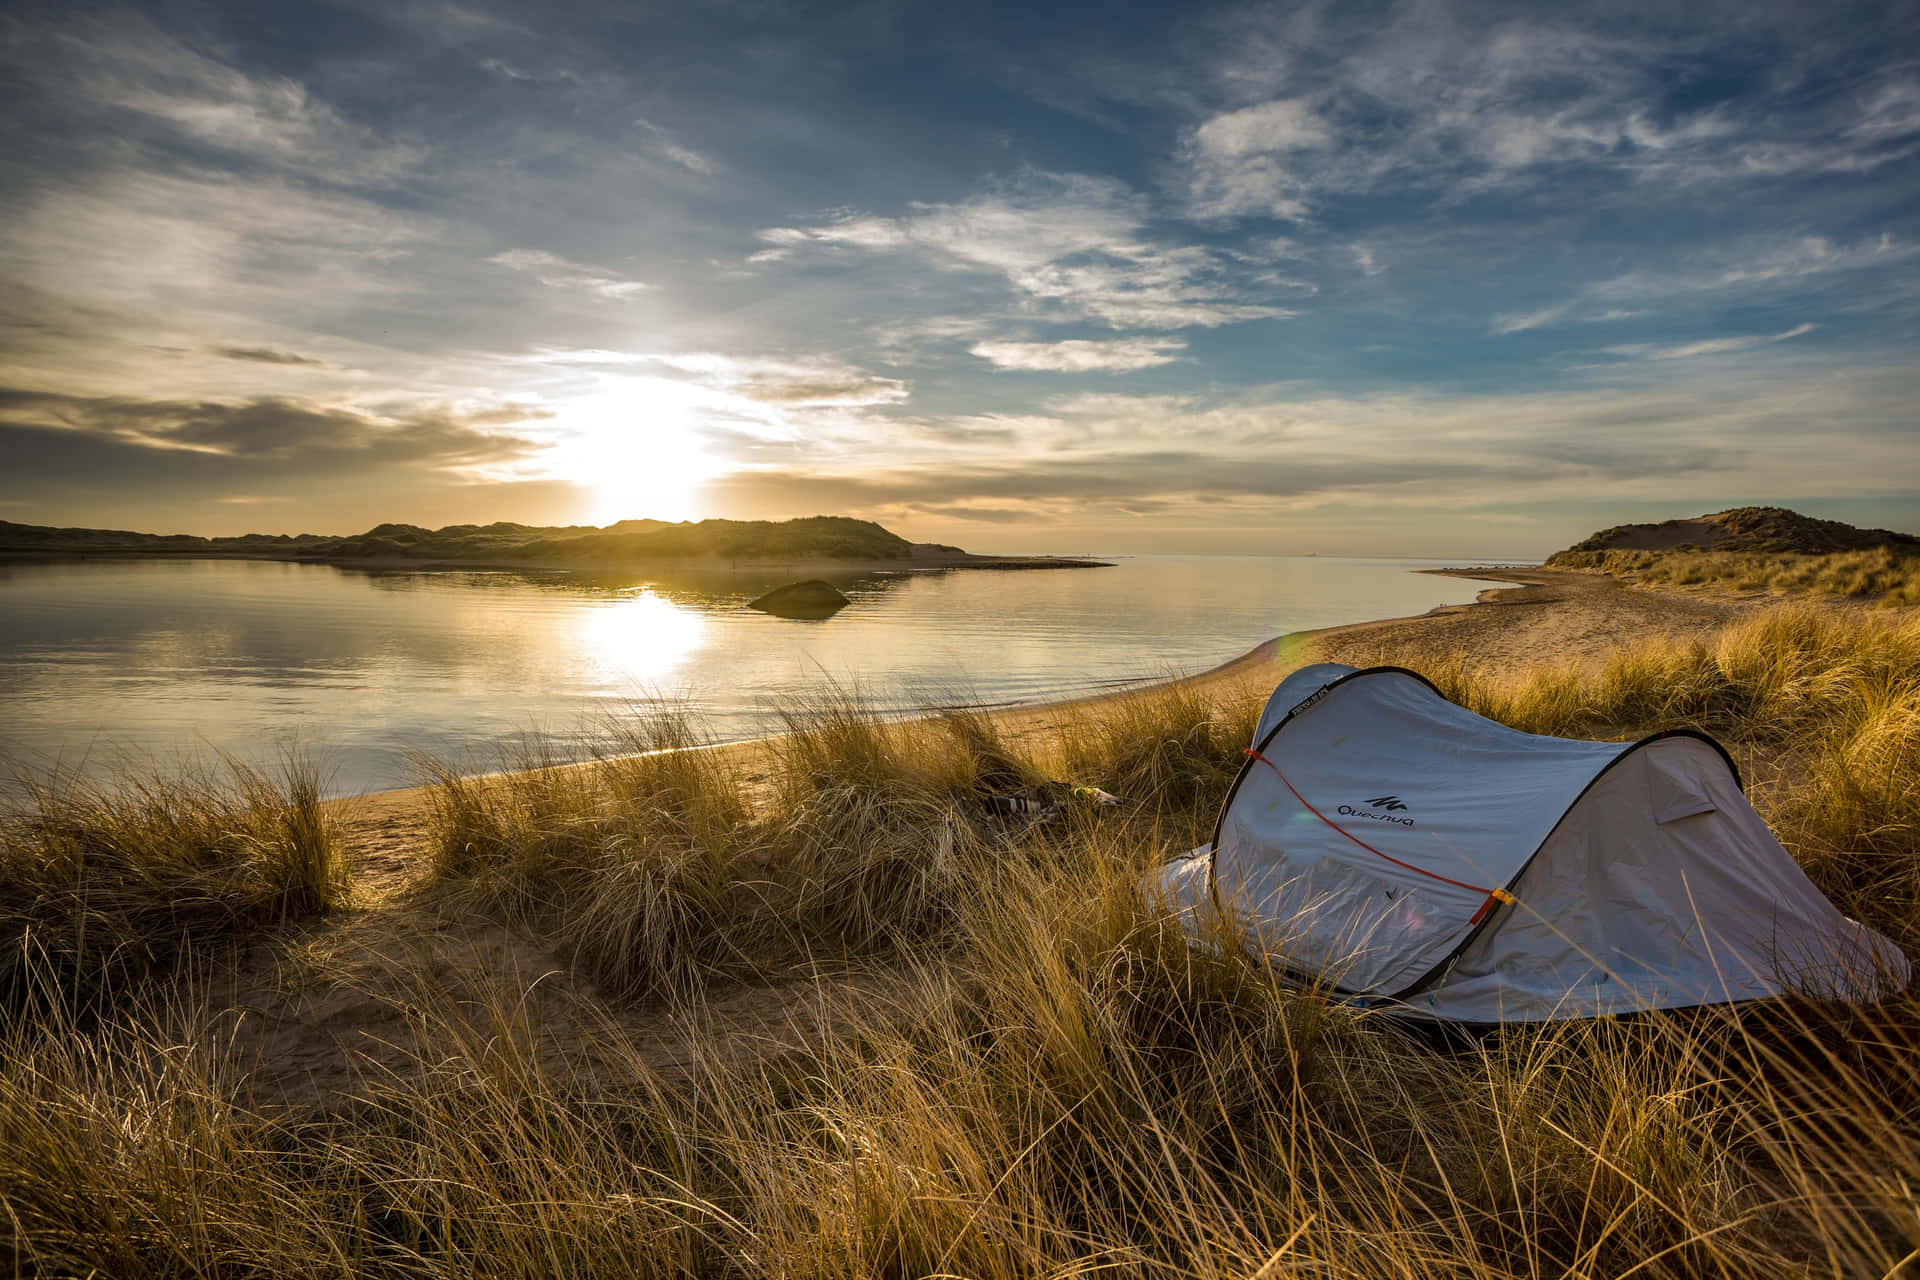 "A beautiful sunrise over a peaceful lakeside campsite"